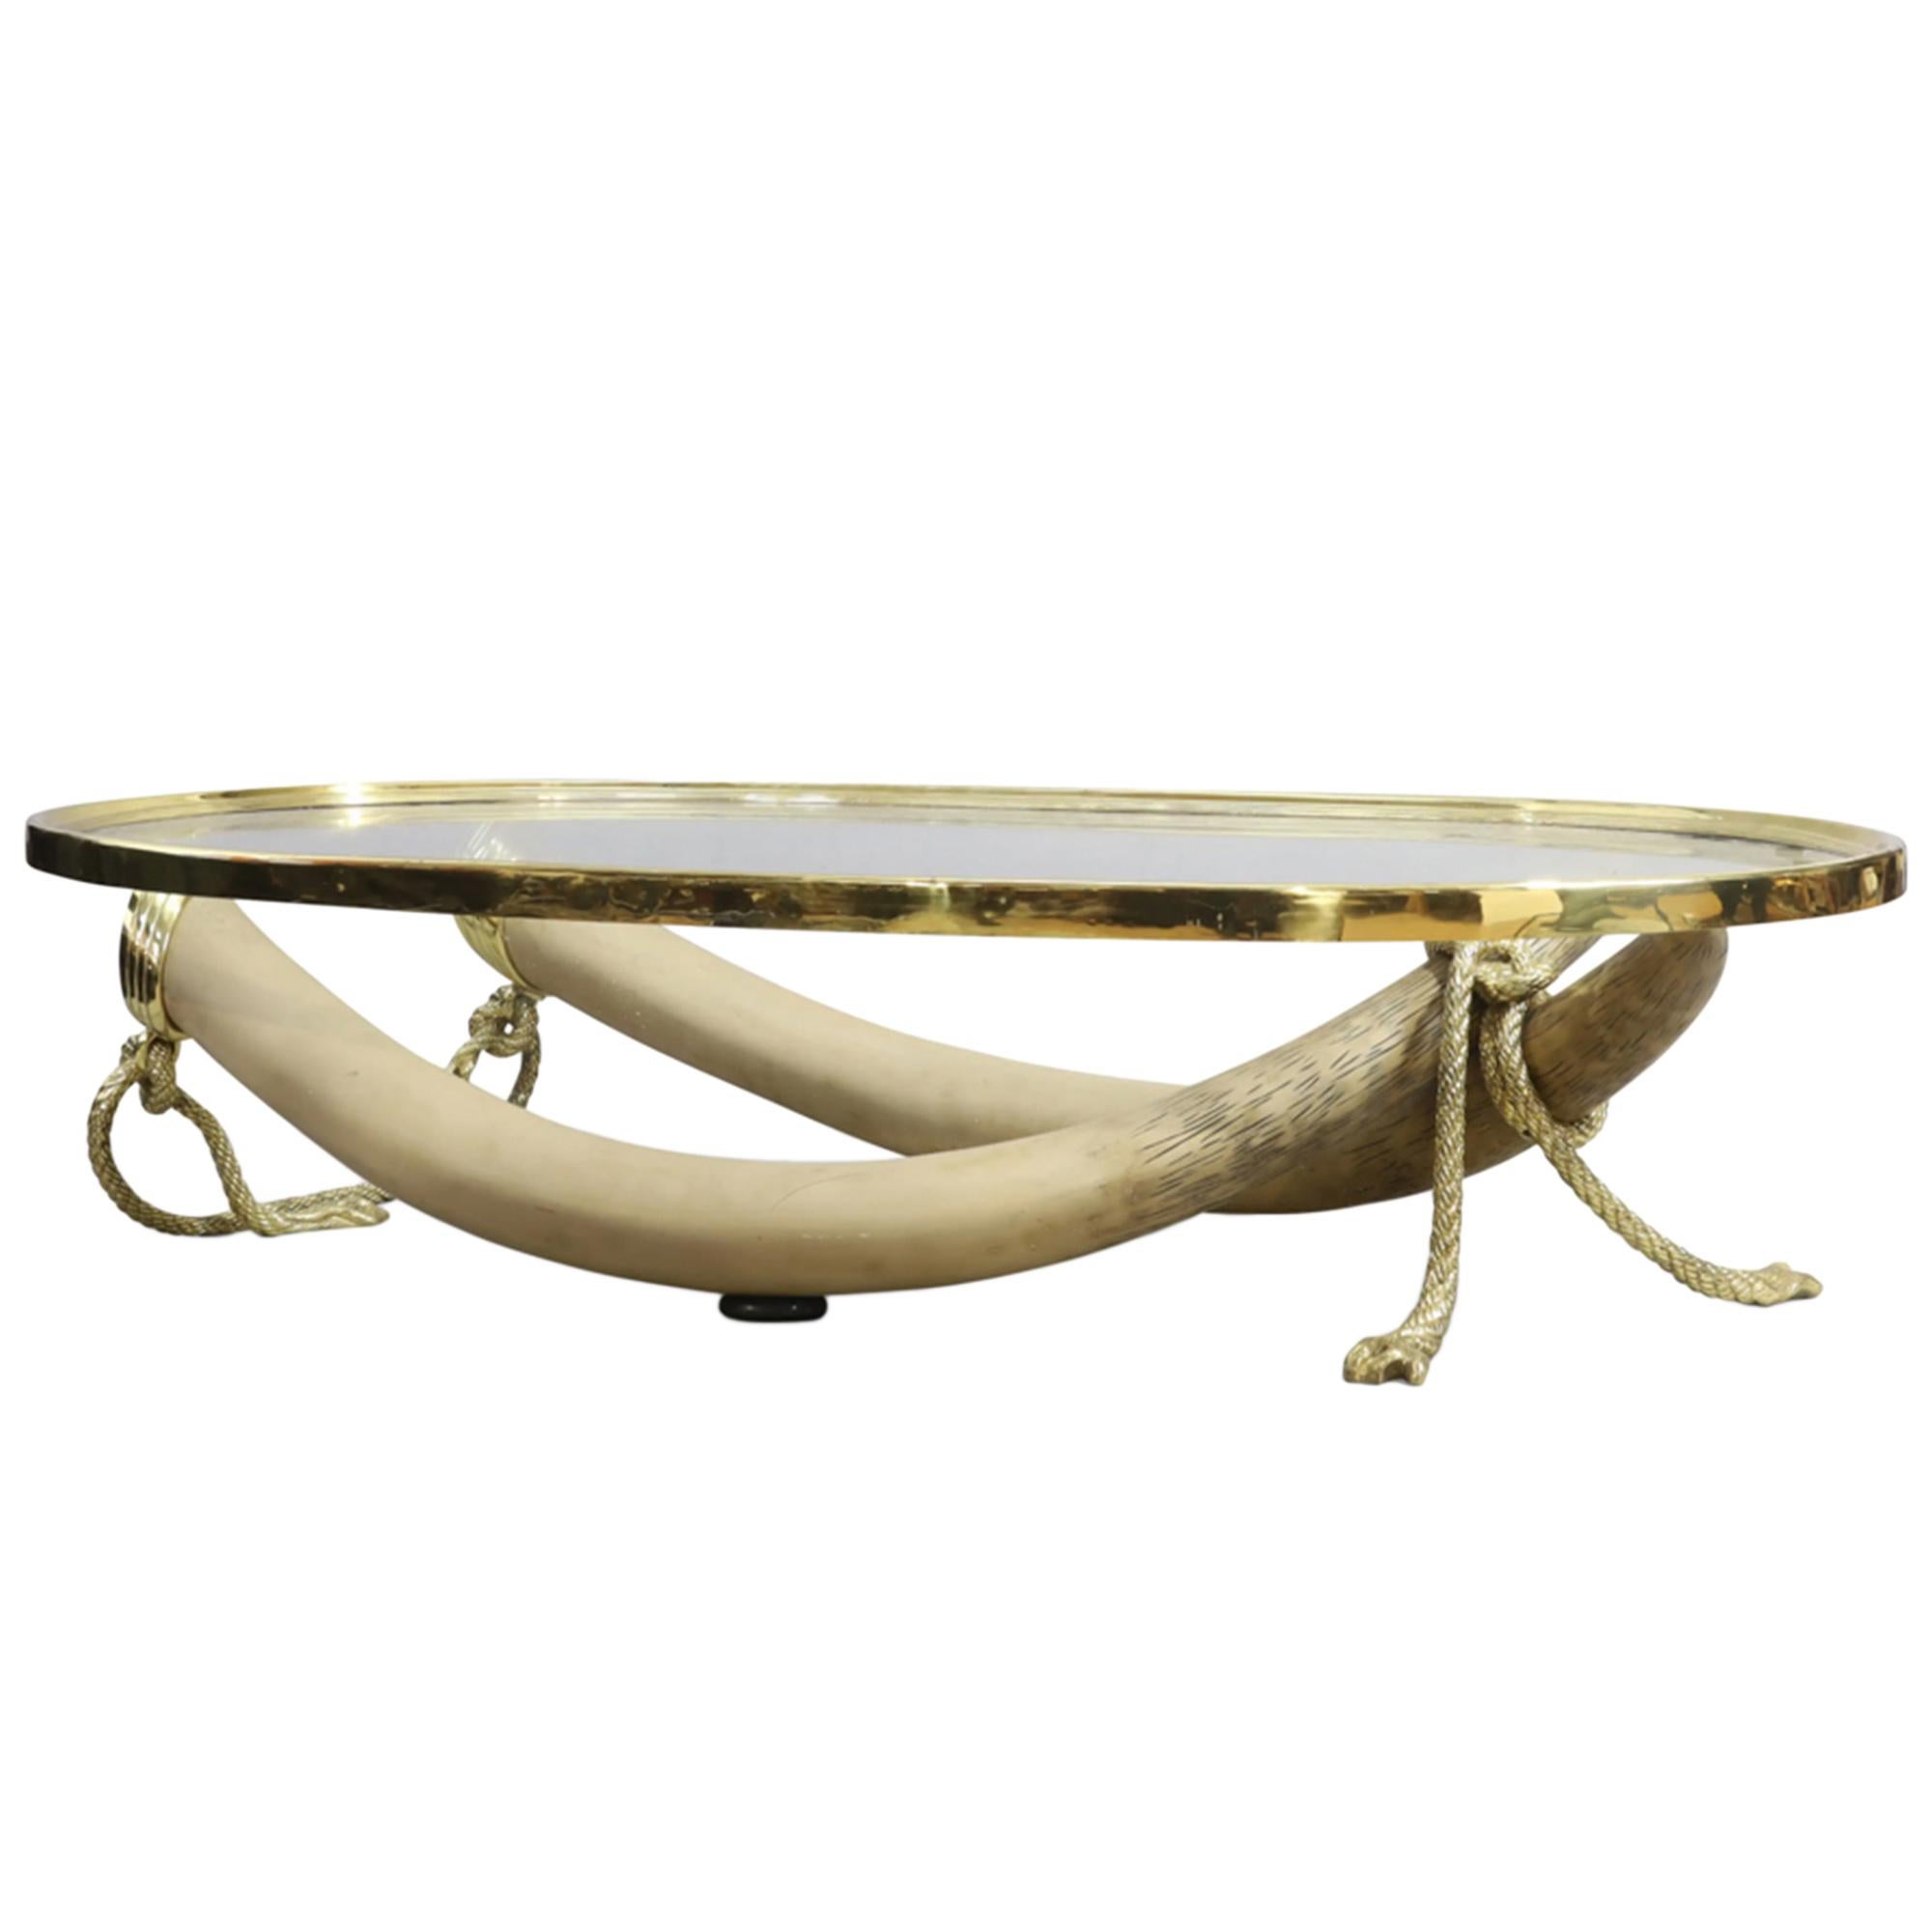 Une table basse de grande taille fabriquée par le luxueux fabricant de meubles espagnol Valenti. 

Le plateau rectangulaire en verre repose sur deux grandes fausses défenses en résine et des supports torsadés en corde de bronze doré. Le plateau de